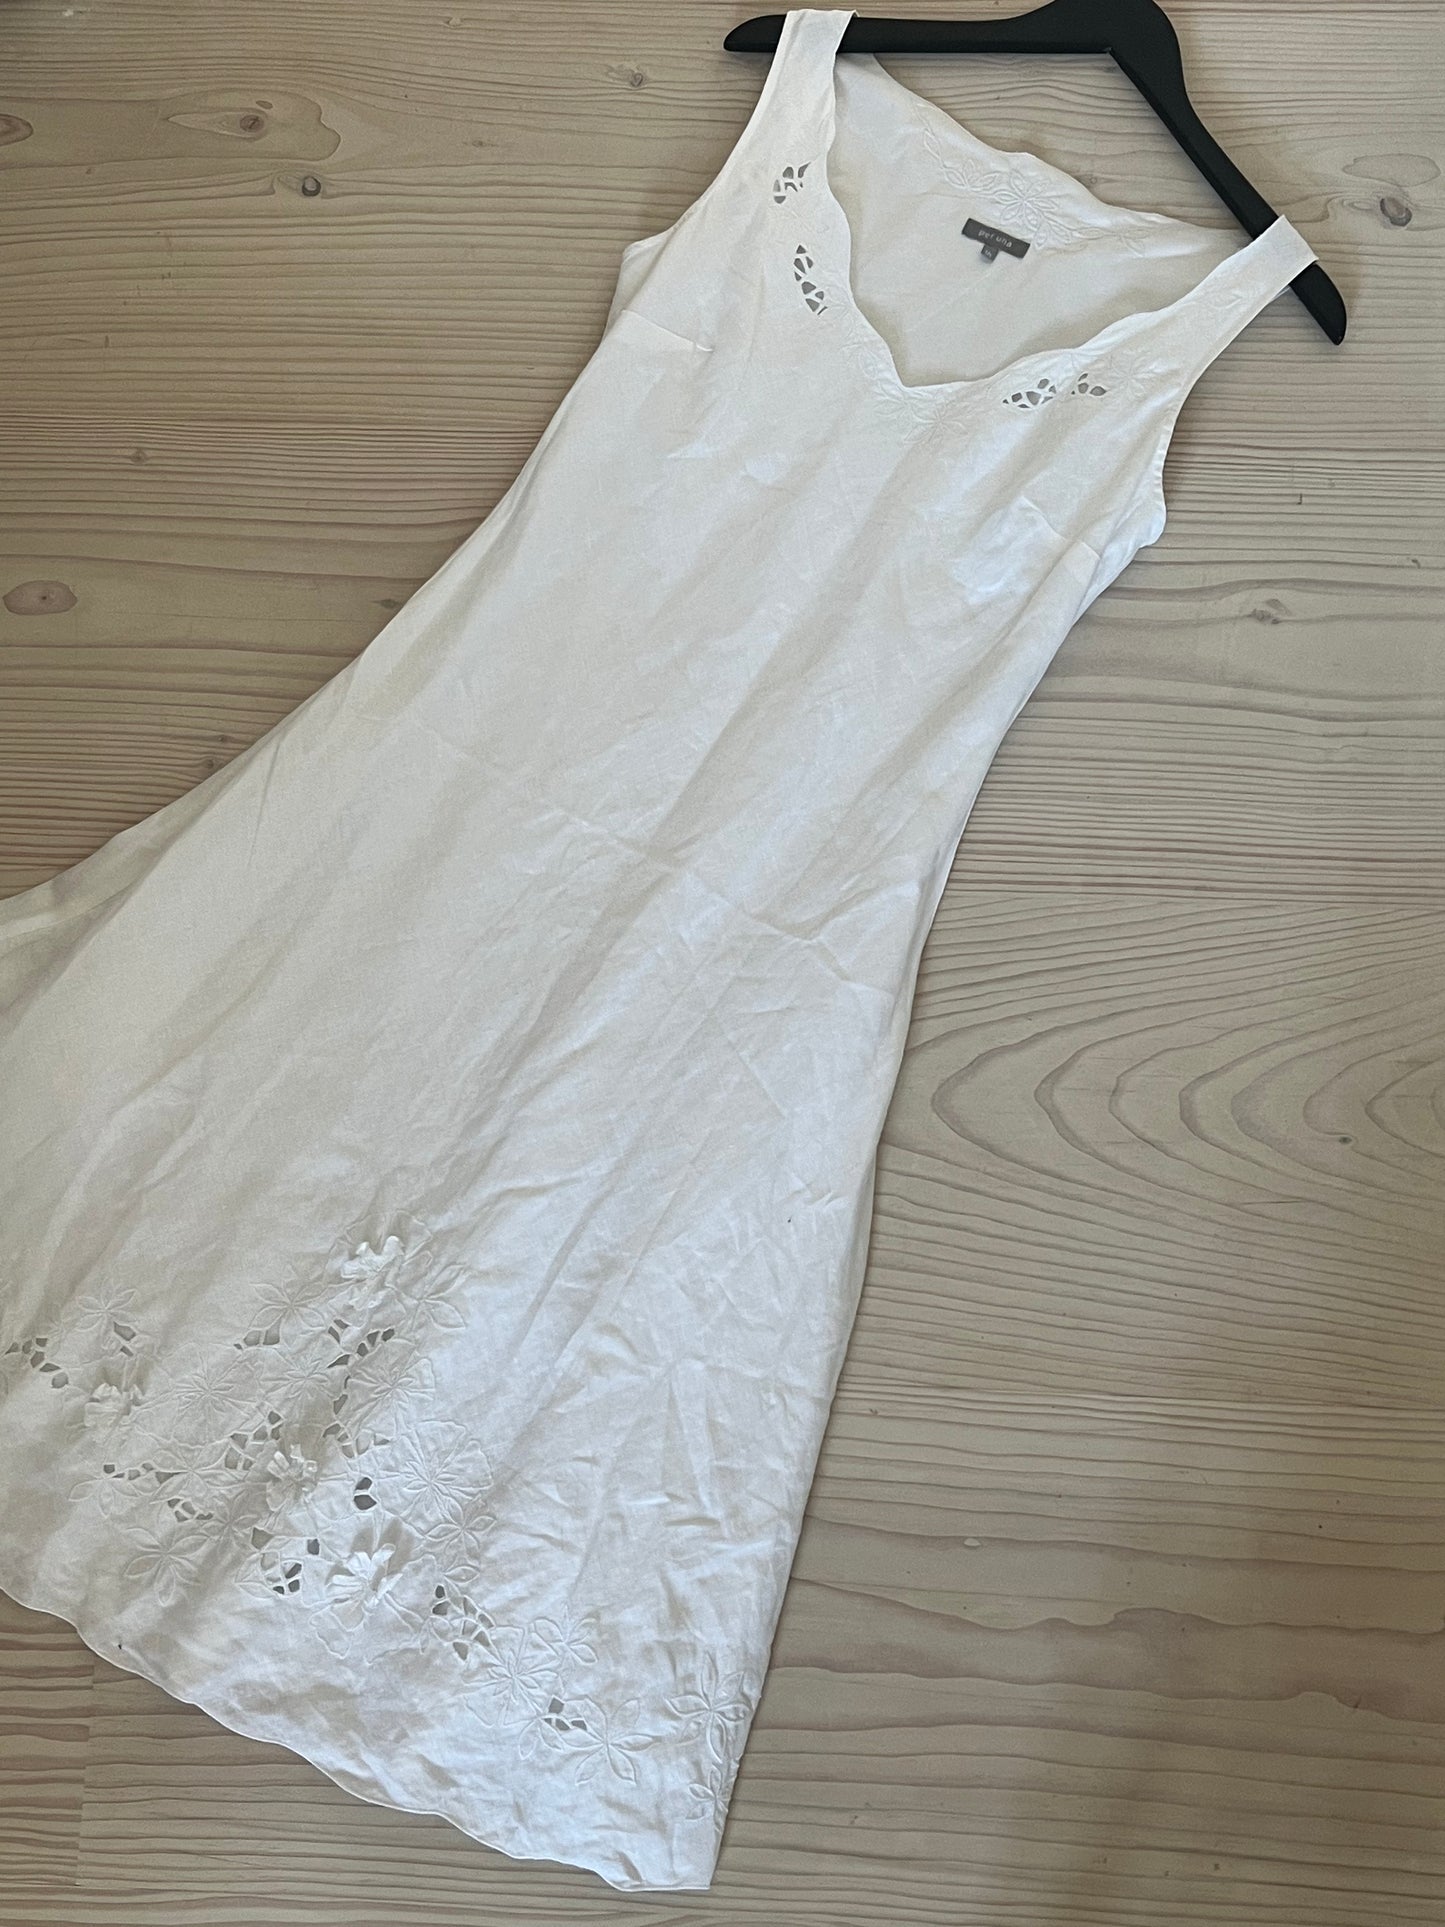 Linen summer dress